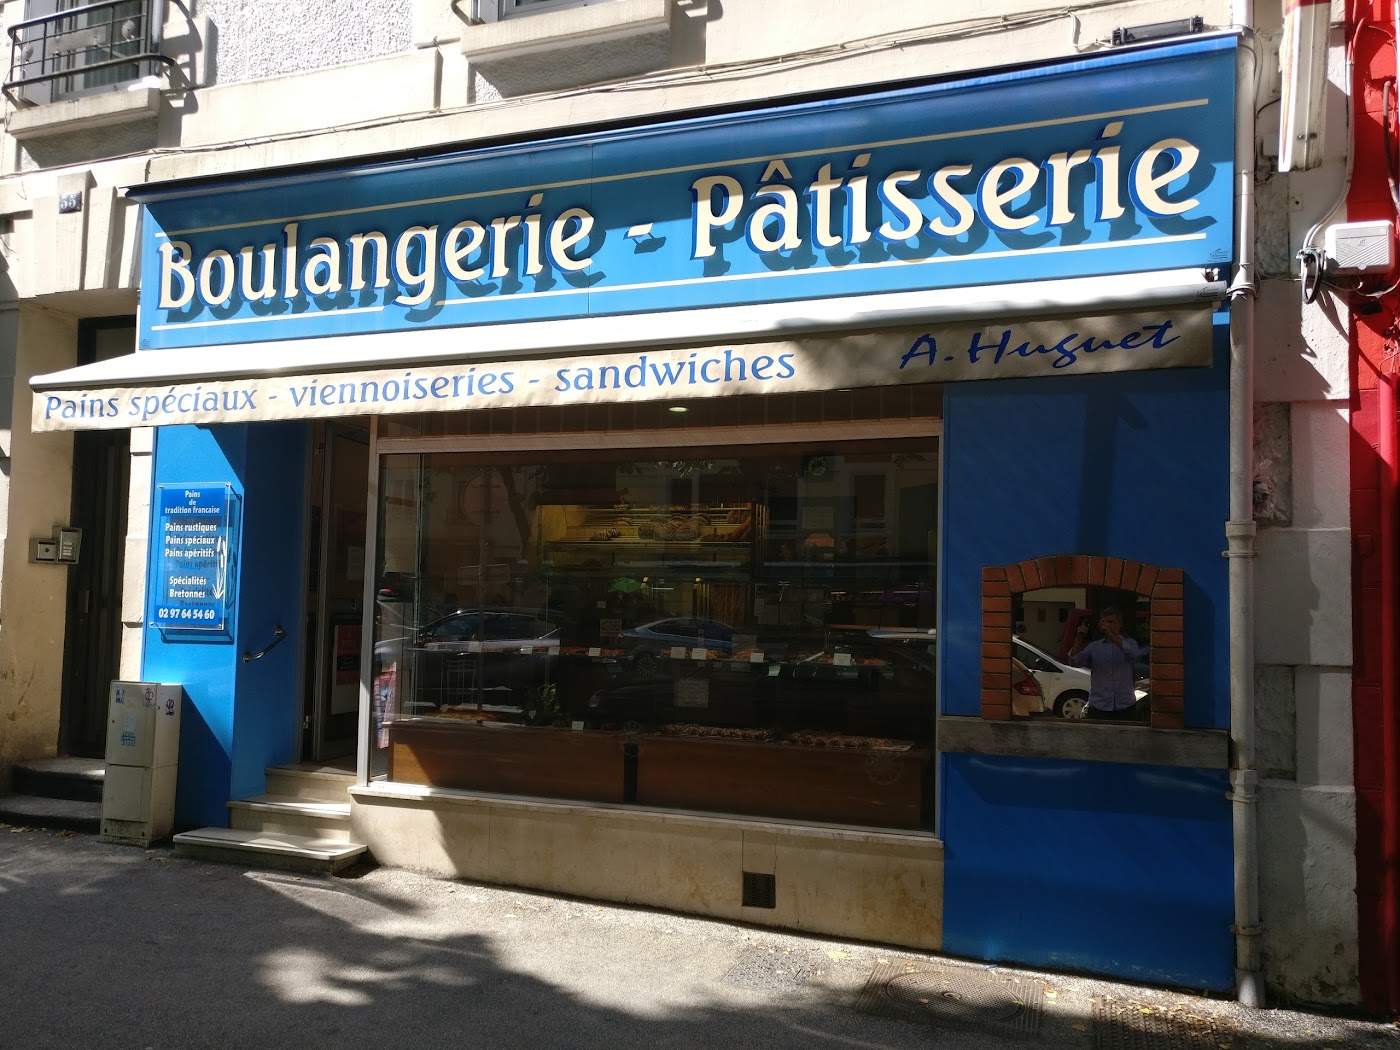 Boulangerie Huguet Alexandre